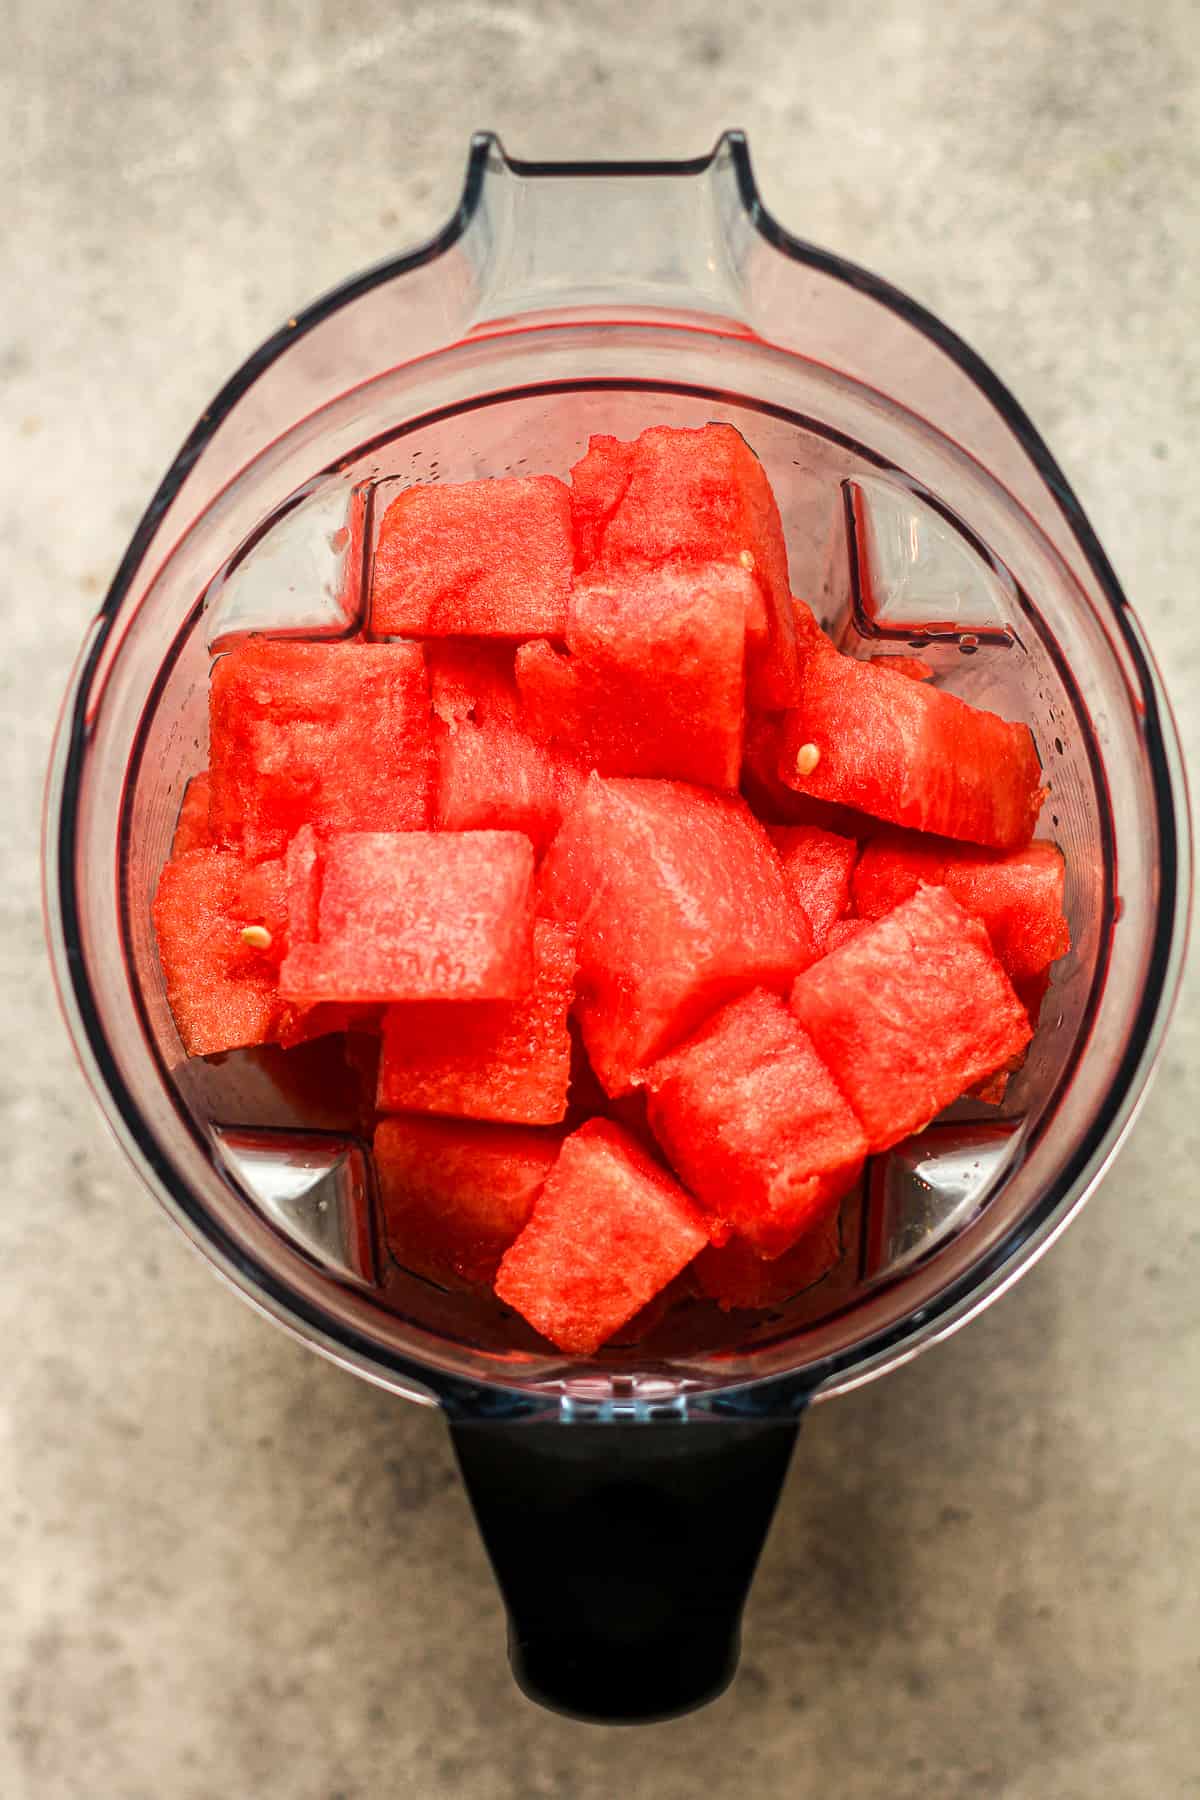 A blender full of watermelon chunks.